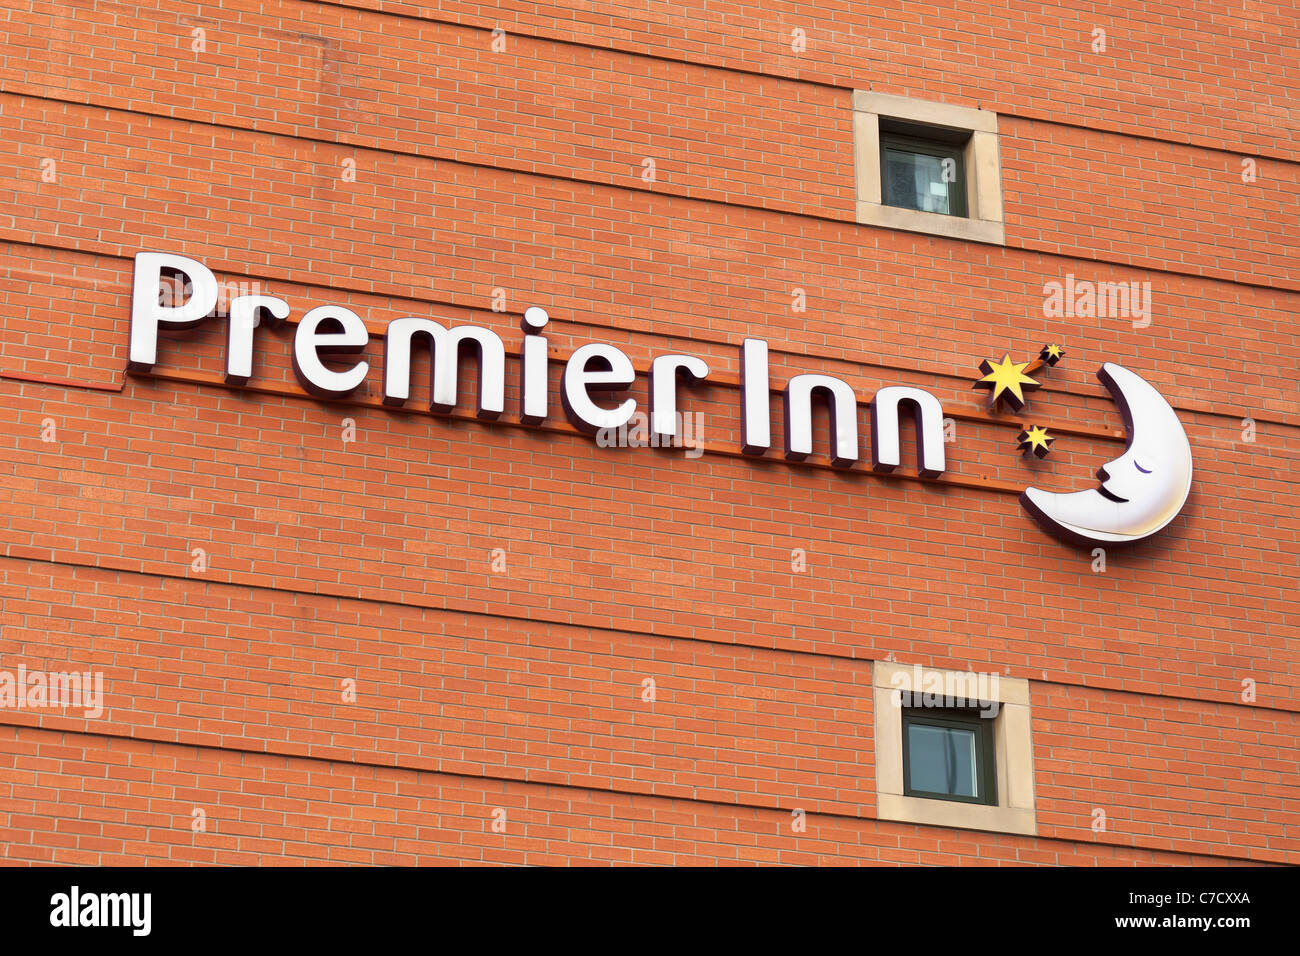 Premier Inn hotel sign, UK. Stock Photo